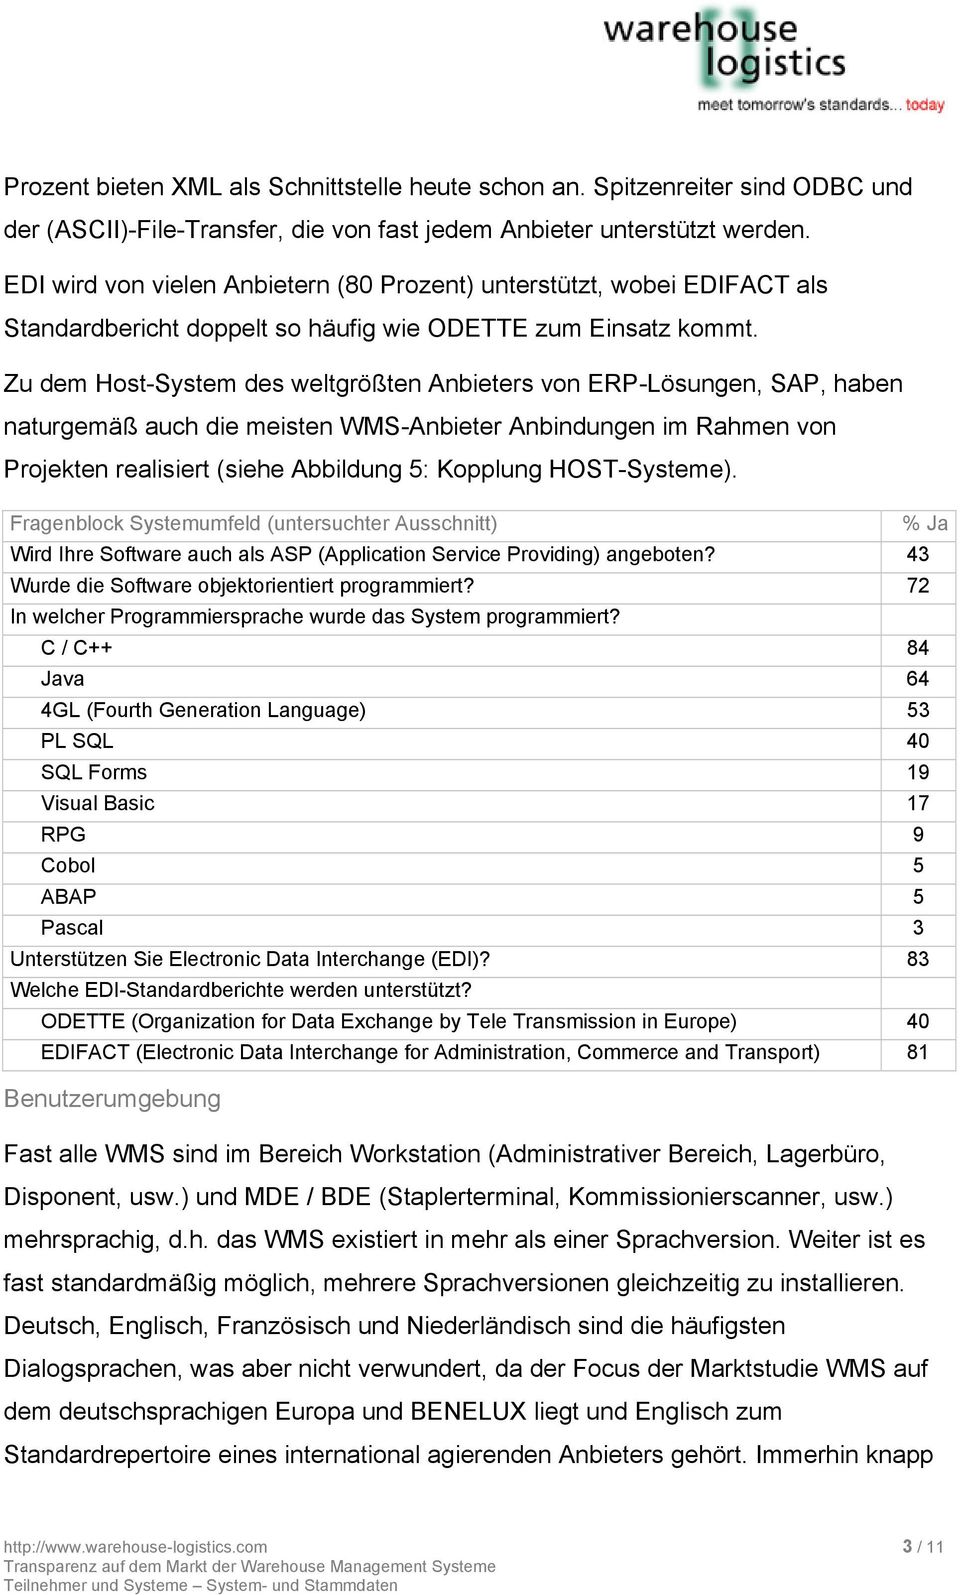 Zu dem Host-System des weltgrößten Anbieters von ERP-Lösungen, SAP, haben naturgemäß auch die meisten WMS-Anbieter Anbindungen im Rahmen von Projekten realisiert (siehe Abbildung 5: Kopplung